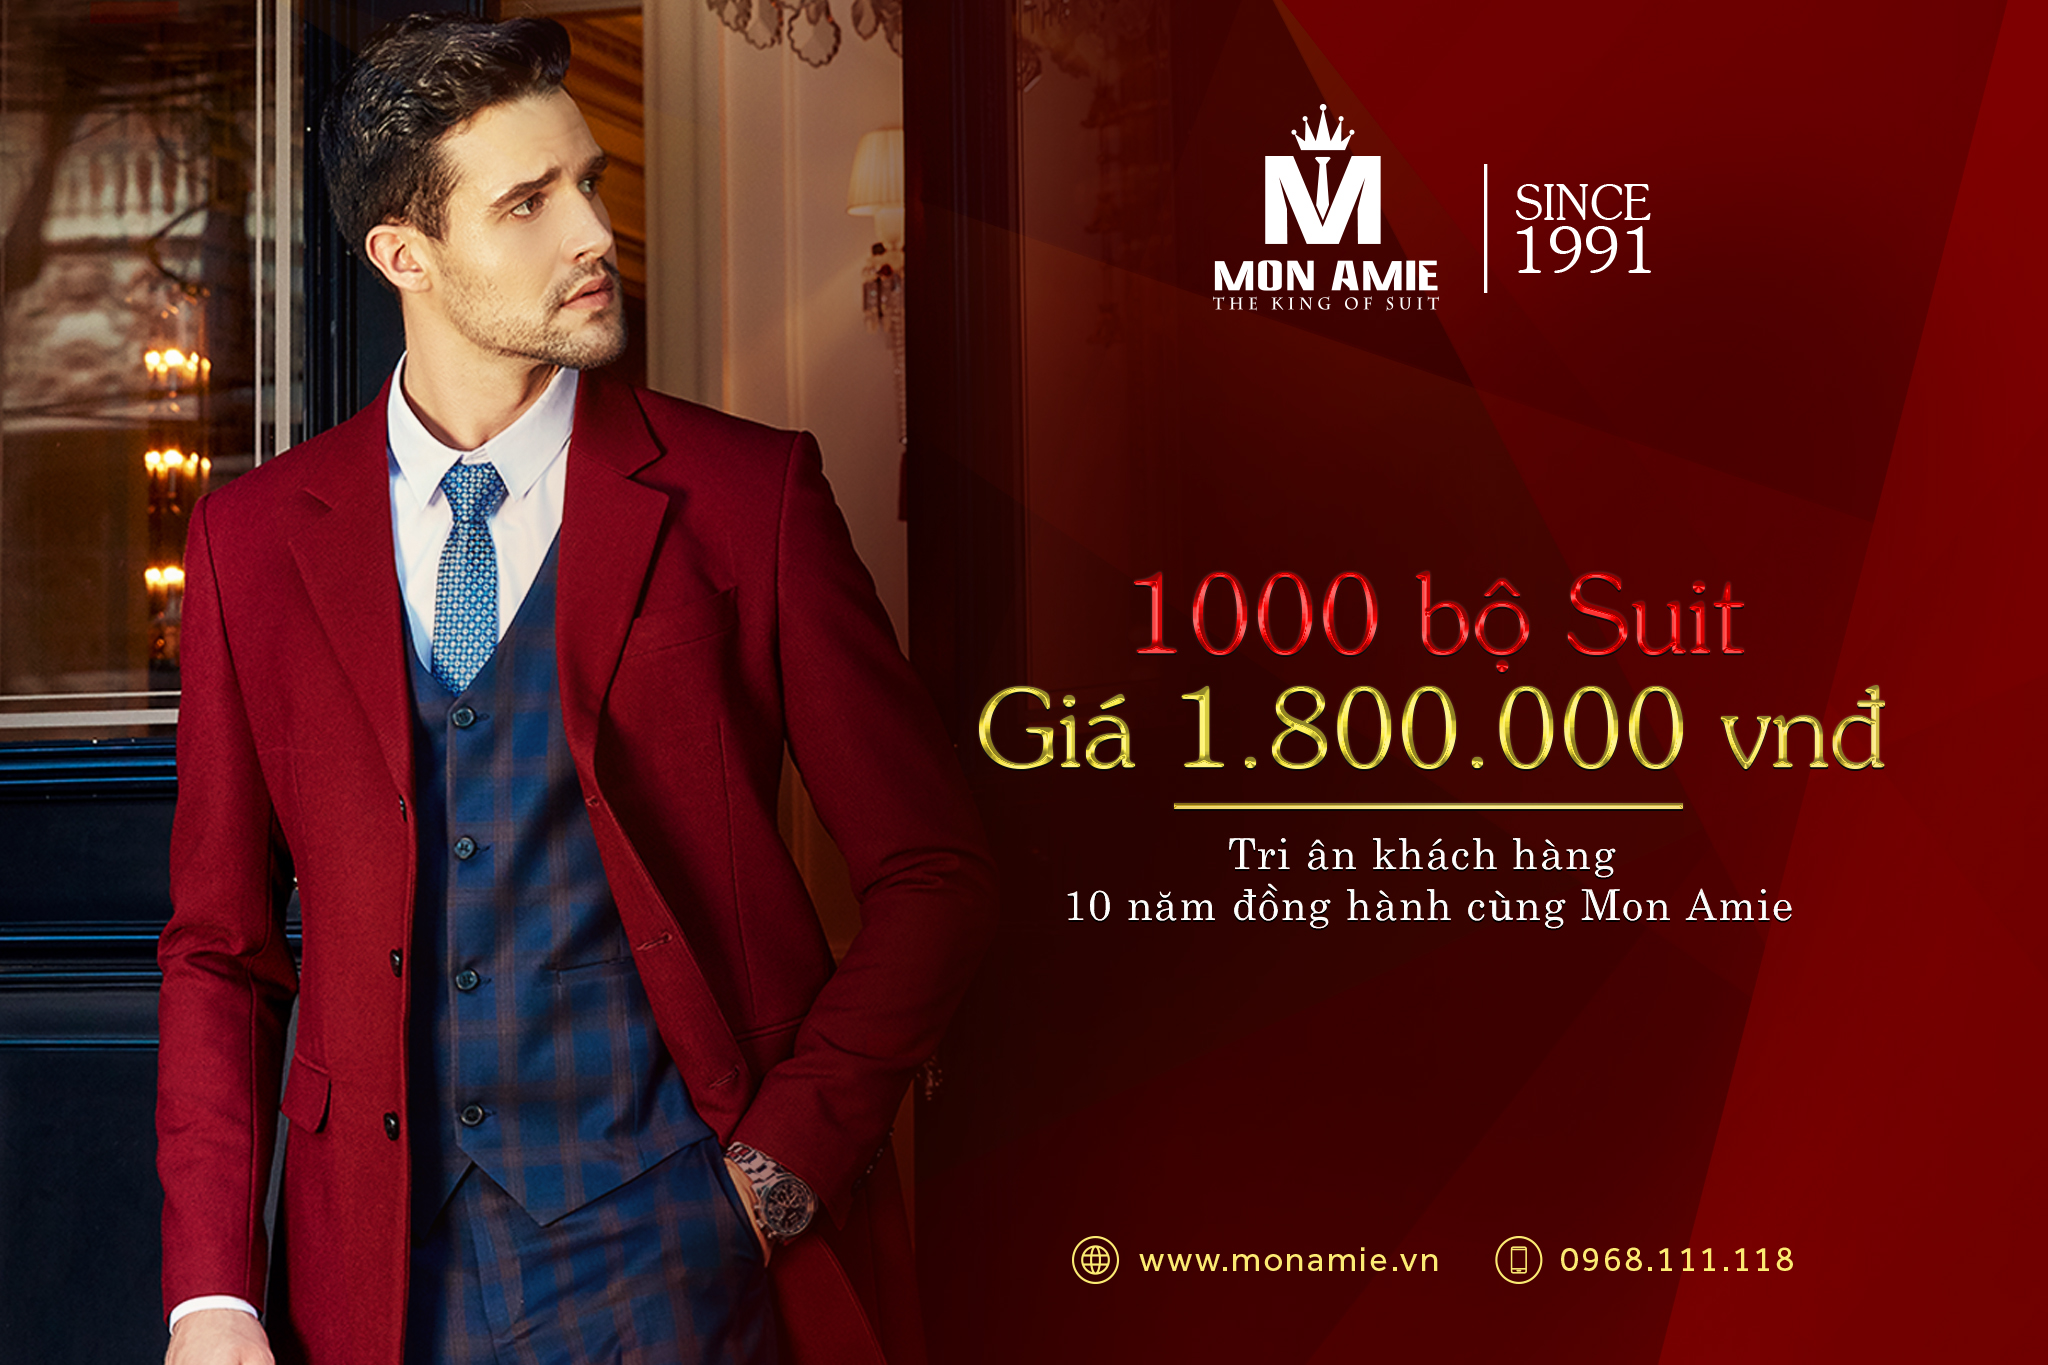 1000 Bộ Suit 1.800.000 vnđ Tri Ân Khách Hàng 10 Năm Đồng Hành Cùng Mon Amie